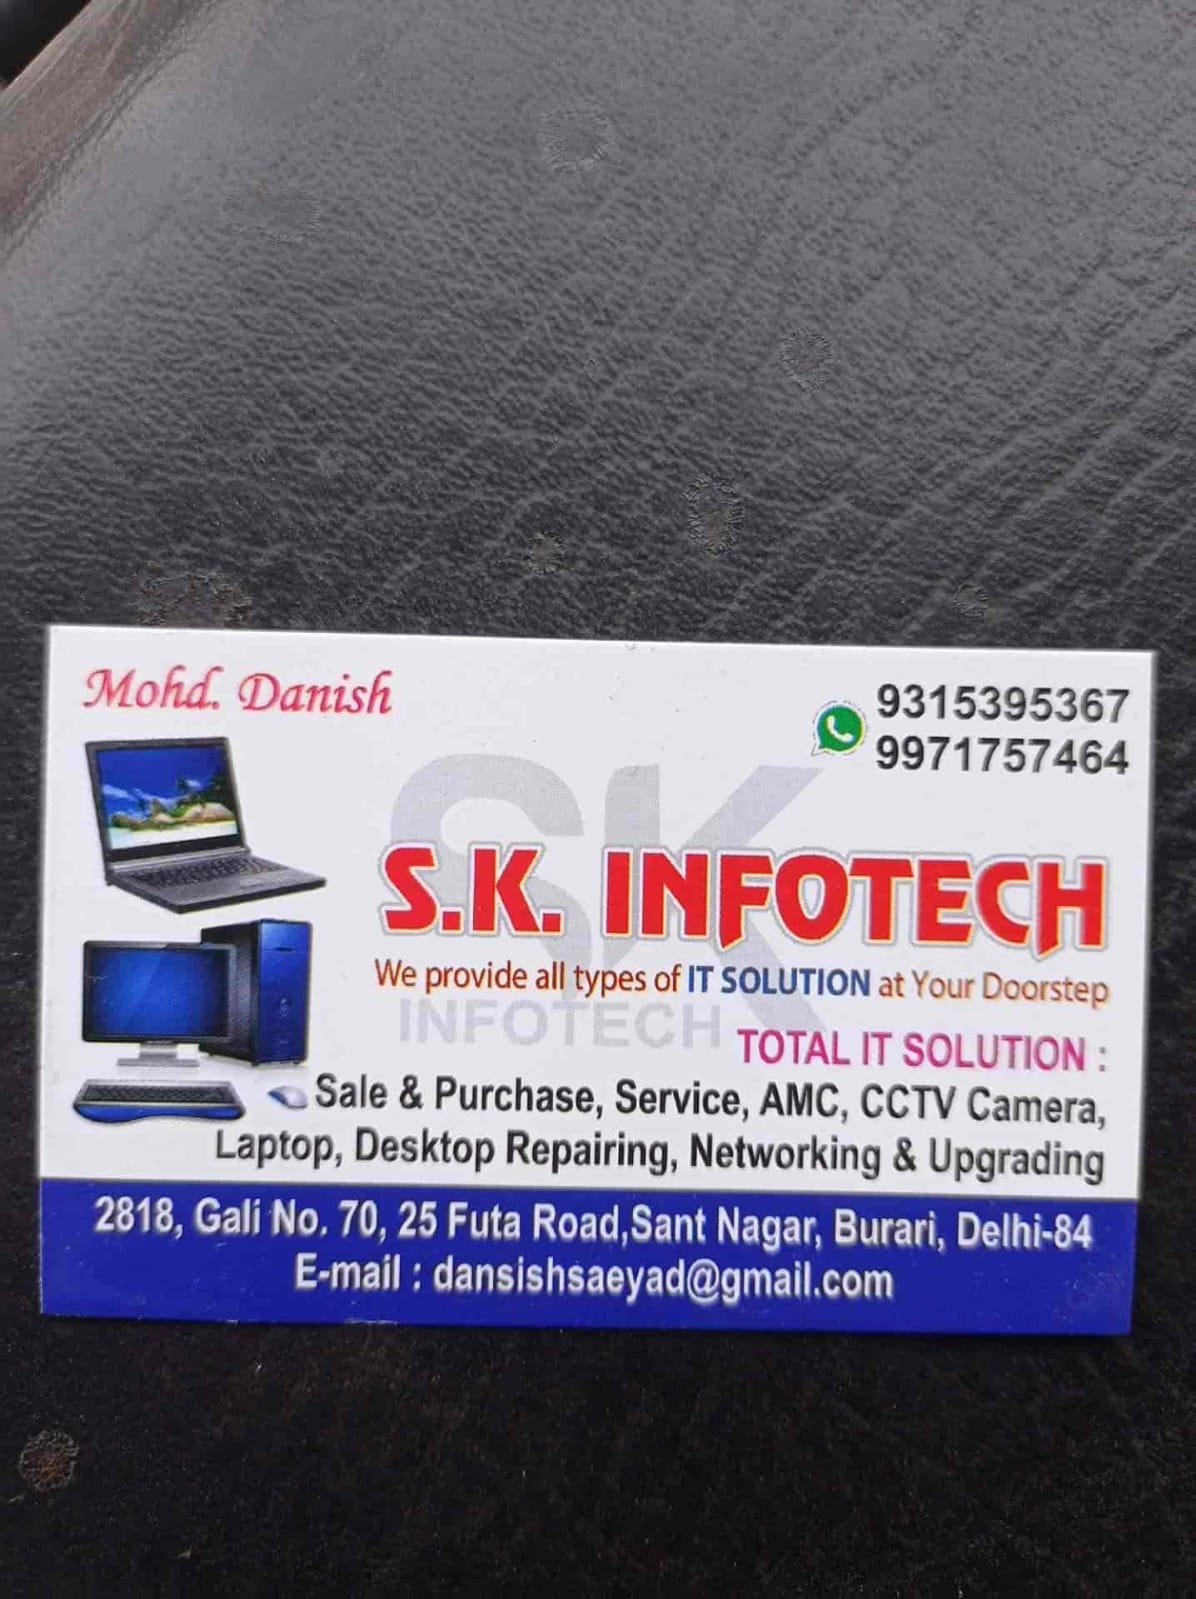 S.K Infotech